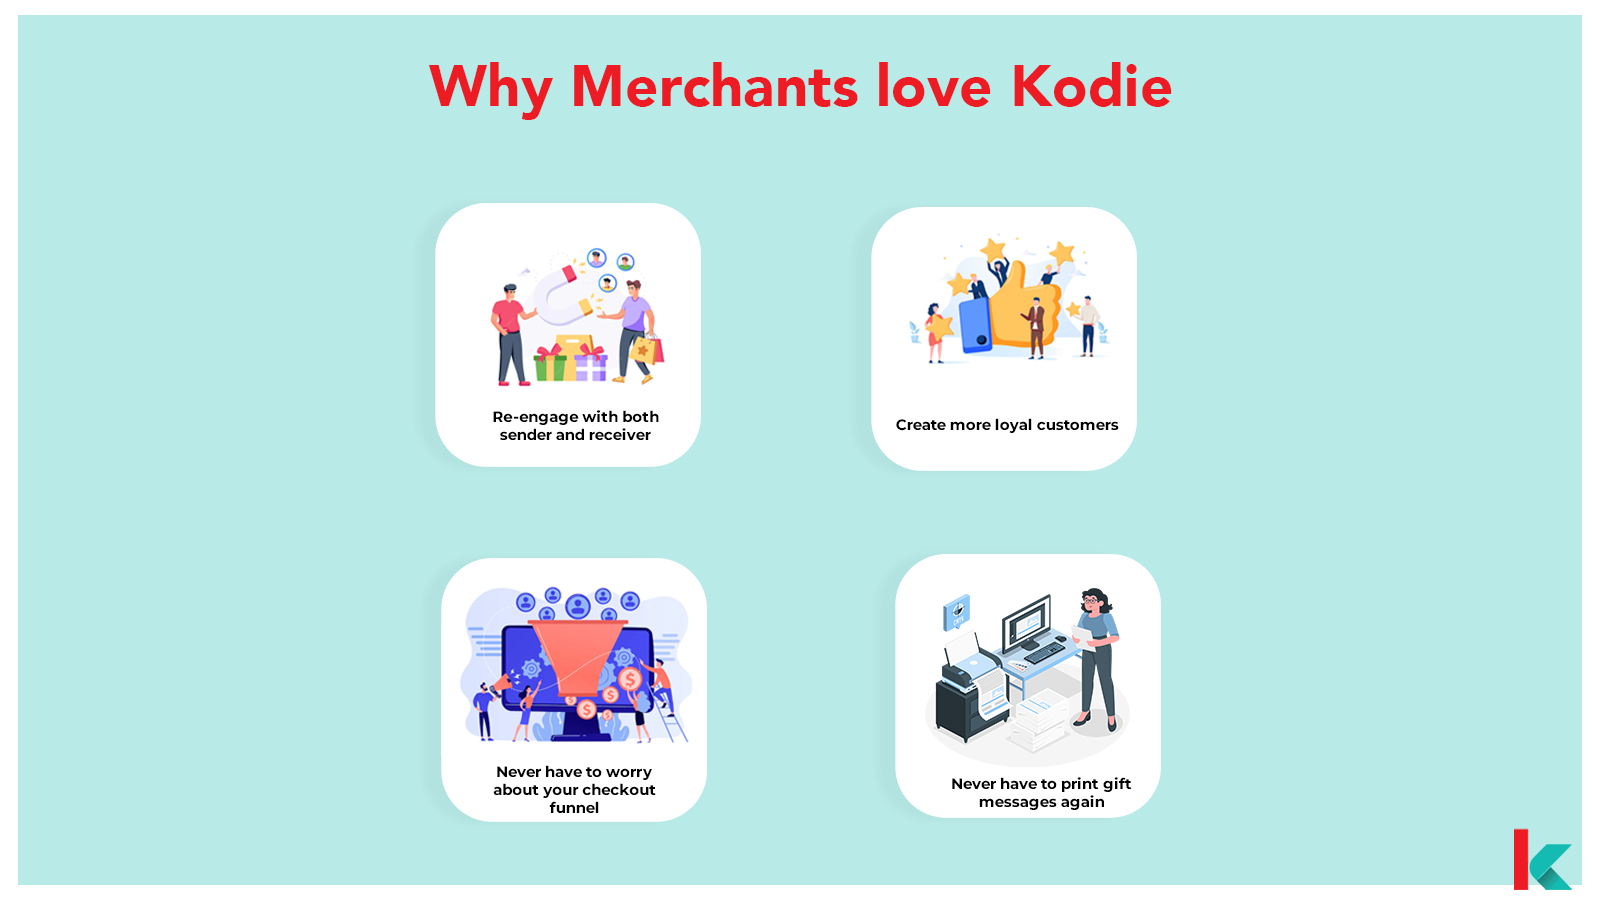 Kodie - 对商家的好处